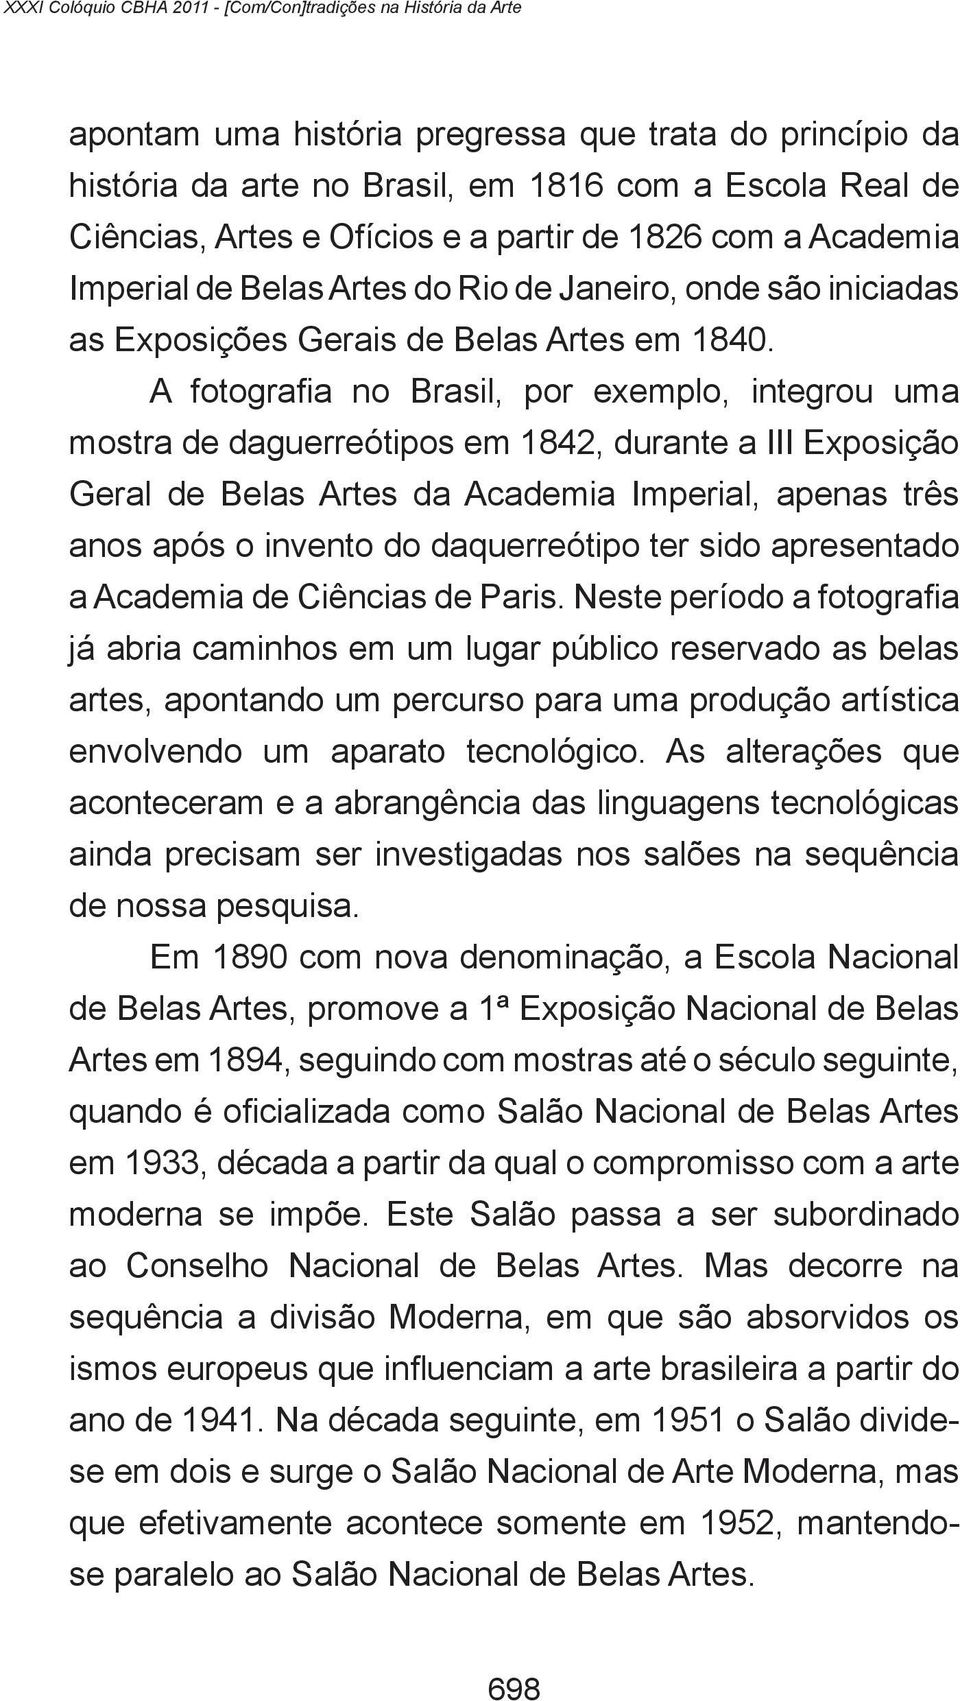 A fotografia no Brasil, por exemplo, integrou uma mostra de daguerreótipos em 1842, durante a III Exposição Geral de Belas Artes da Academia Imperial, apenas três anos após o invento do daquerreótipo